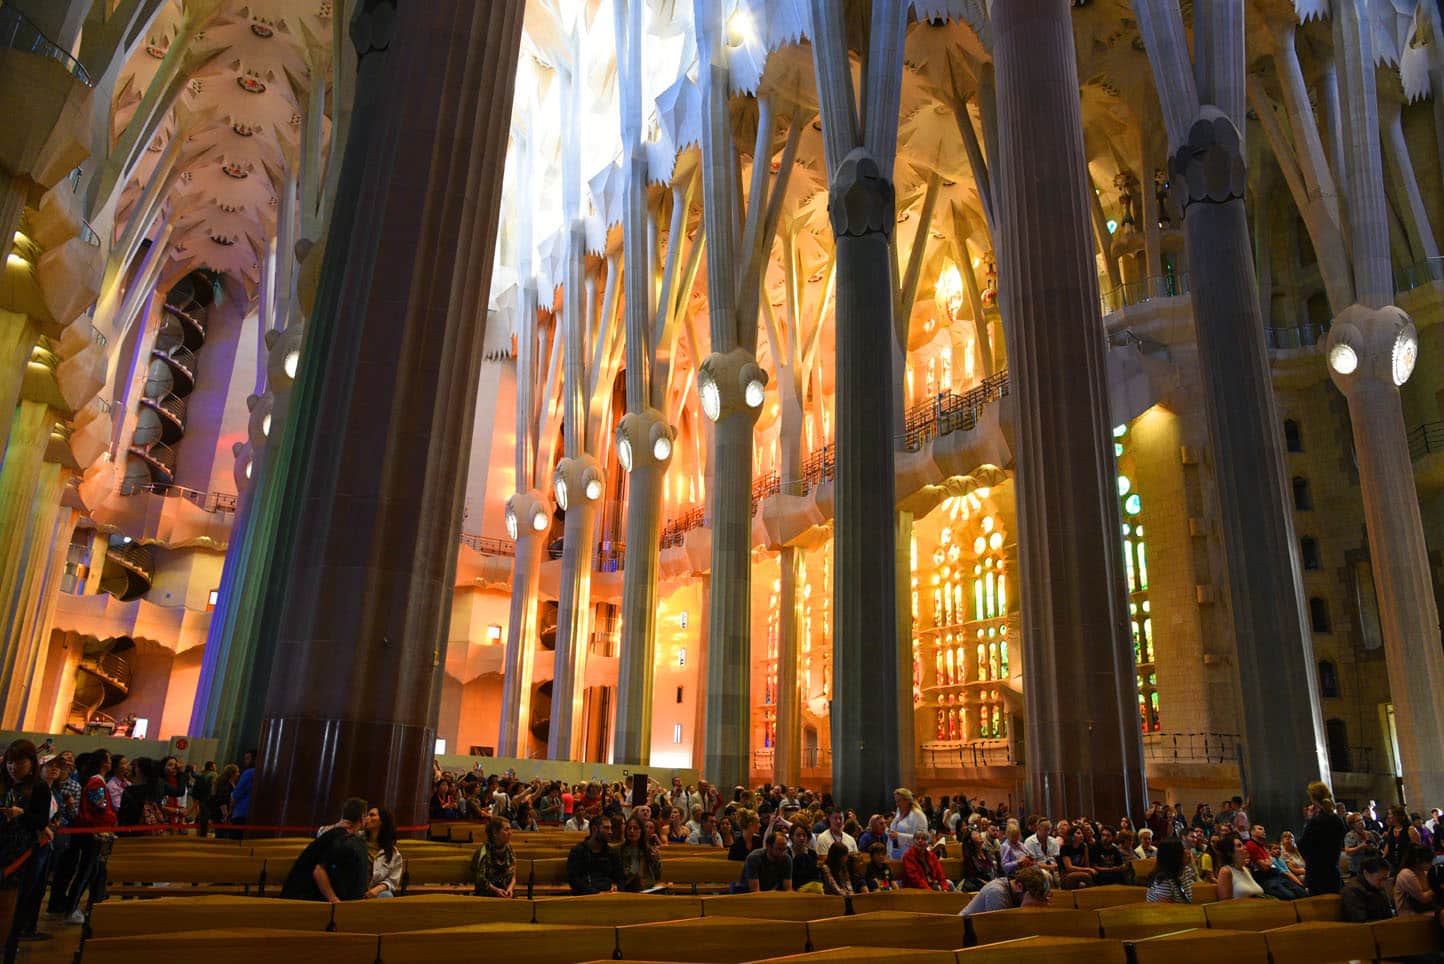 La Sagrada Familia interiors. Photo: Sugato Mukherjee